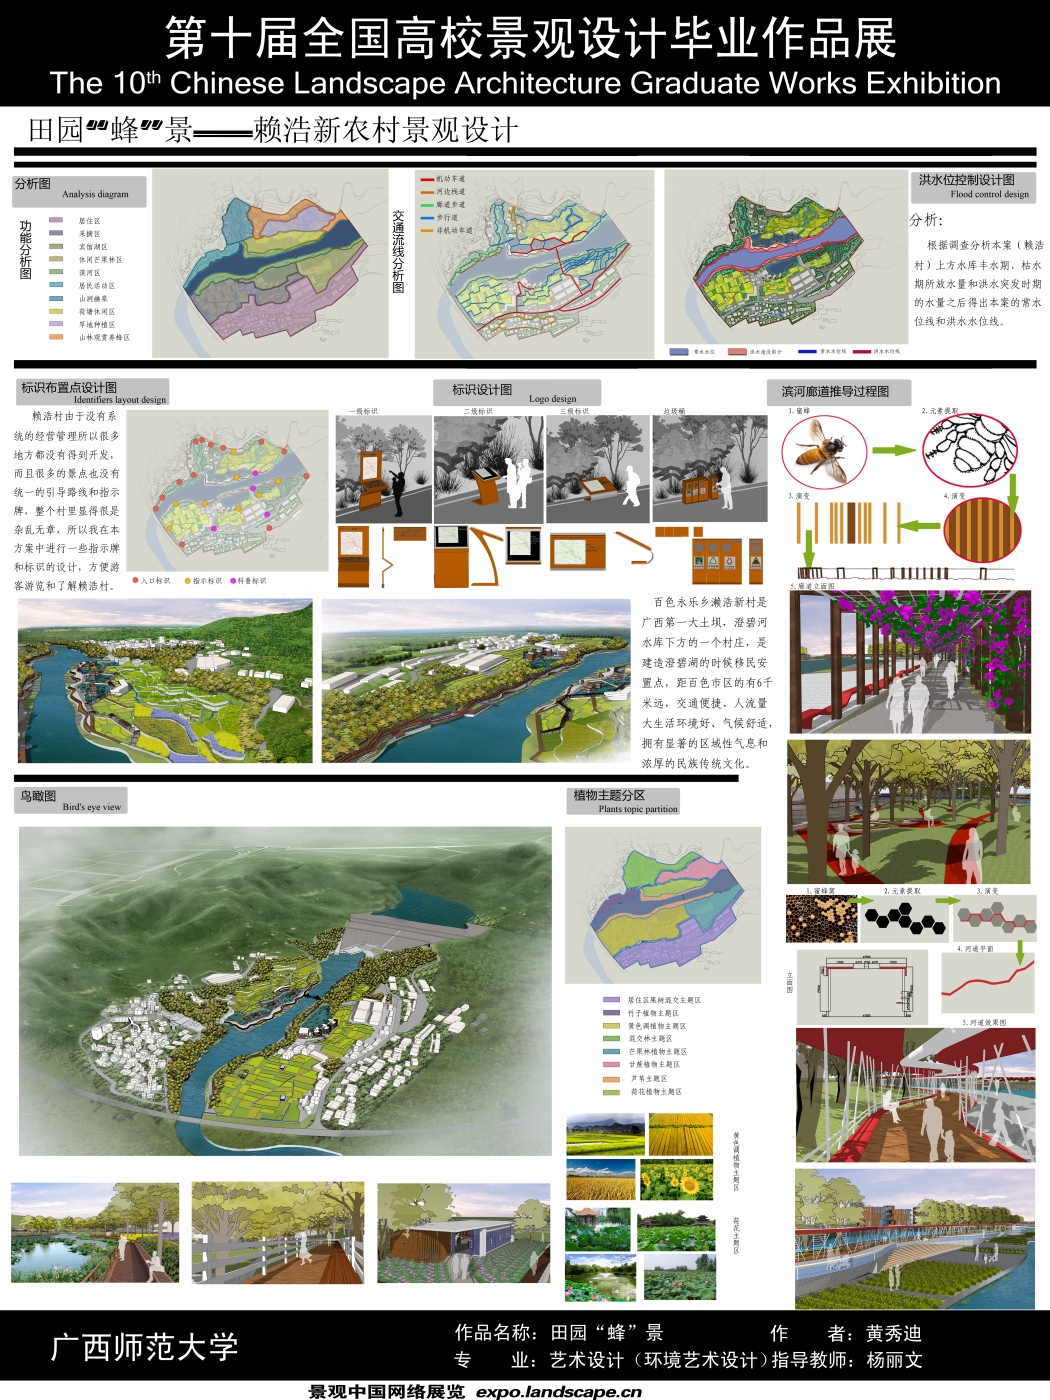 田园“蜂”景——赖浩新农村景观设计-2